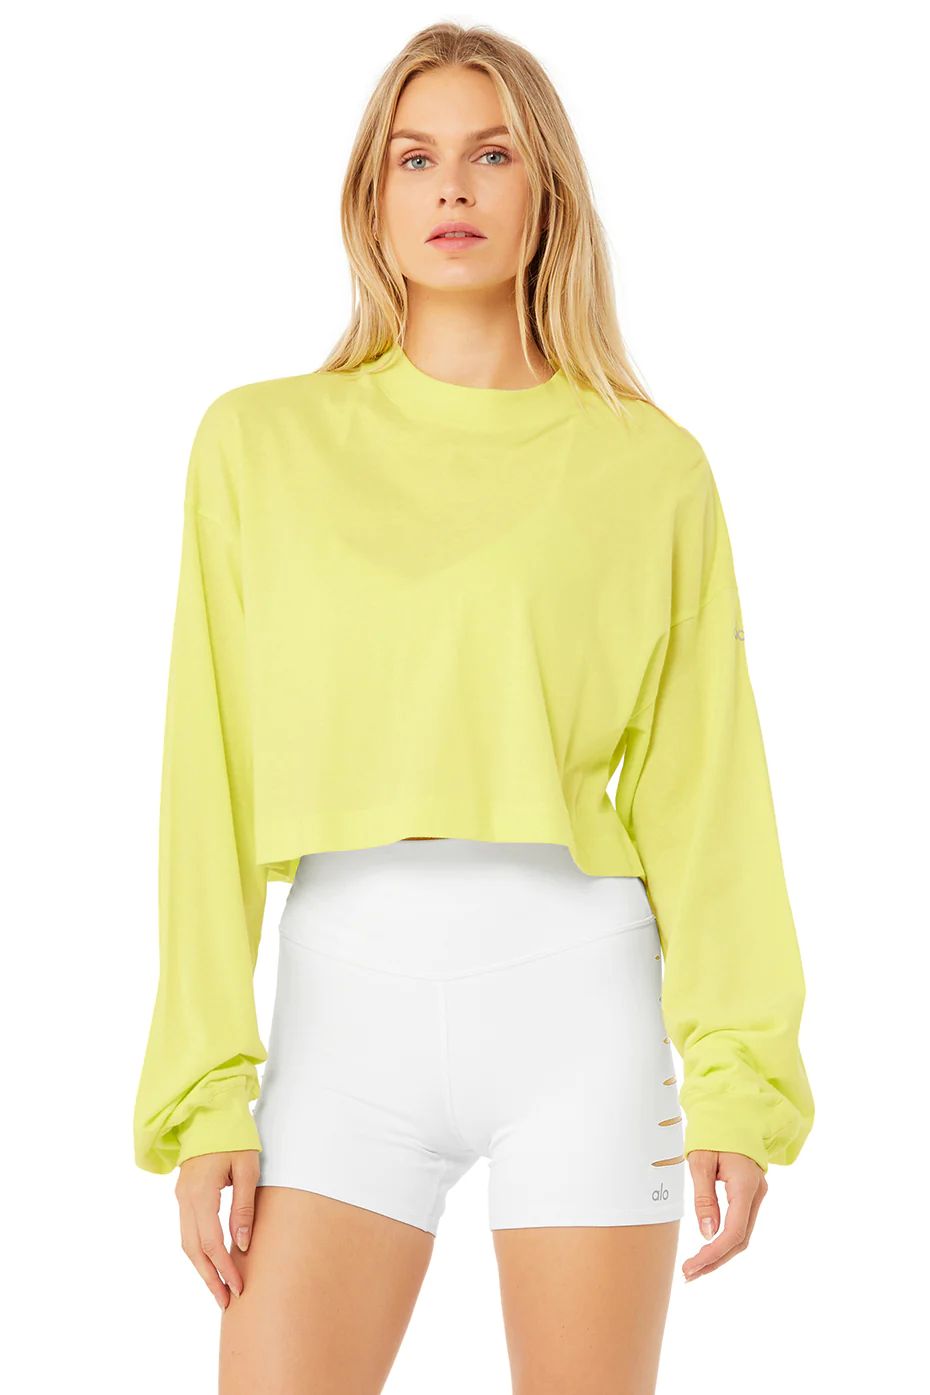 It Girl Crop Long Sleeve Sweatshirt in Shock Yellow, Size: Medium | Alo YogaÂ® | Alo Yoga